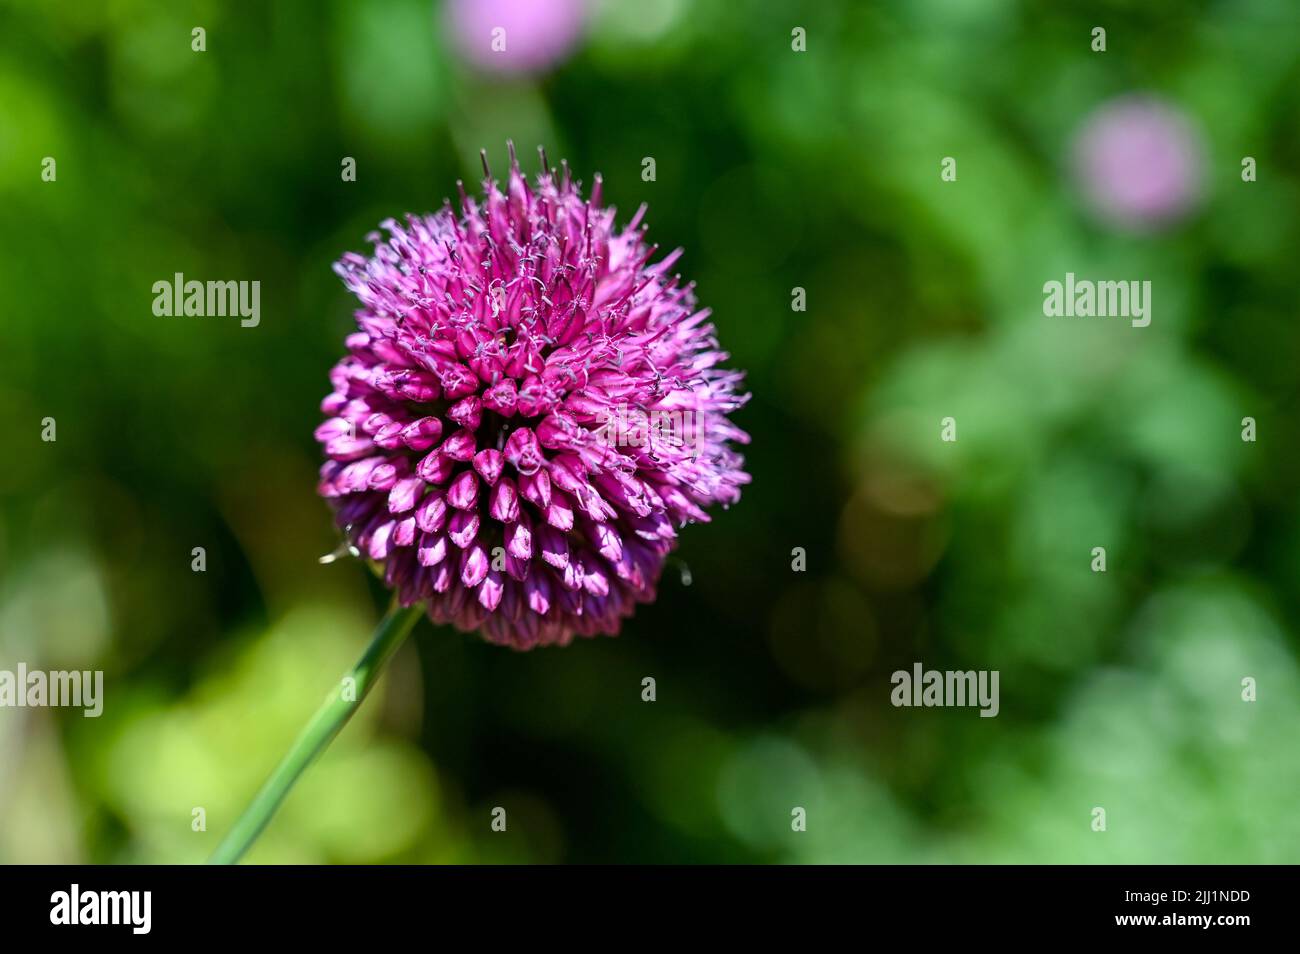 Pequeña planta púrpura Allium floreciendo en verano Reino Unido - Allium sphaerocephalon También conocido como el palillo de tambor allium o puerro de cabeza redonda, es una flor de verano Foto de stock